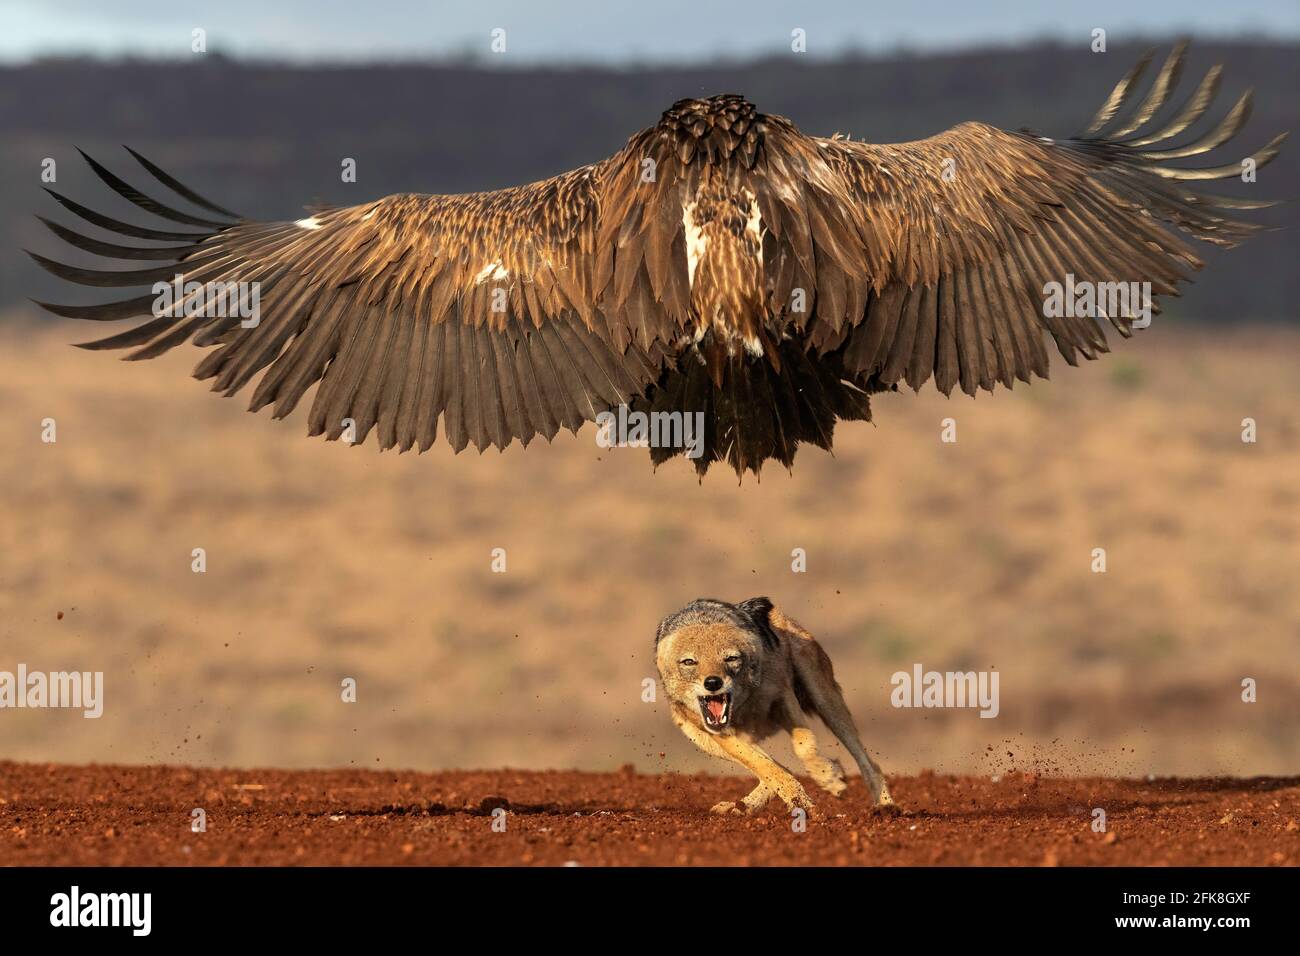 Gli avvoltoi si gonfiano per cercare di rubare dai jackals. Zimanga PRIVATE GAME RESERVE, SUDAFRICA: VEDI il momento in cui tre jackals hanno avuto un rottame DI DUE ORE Foto Stock